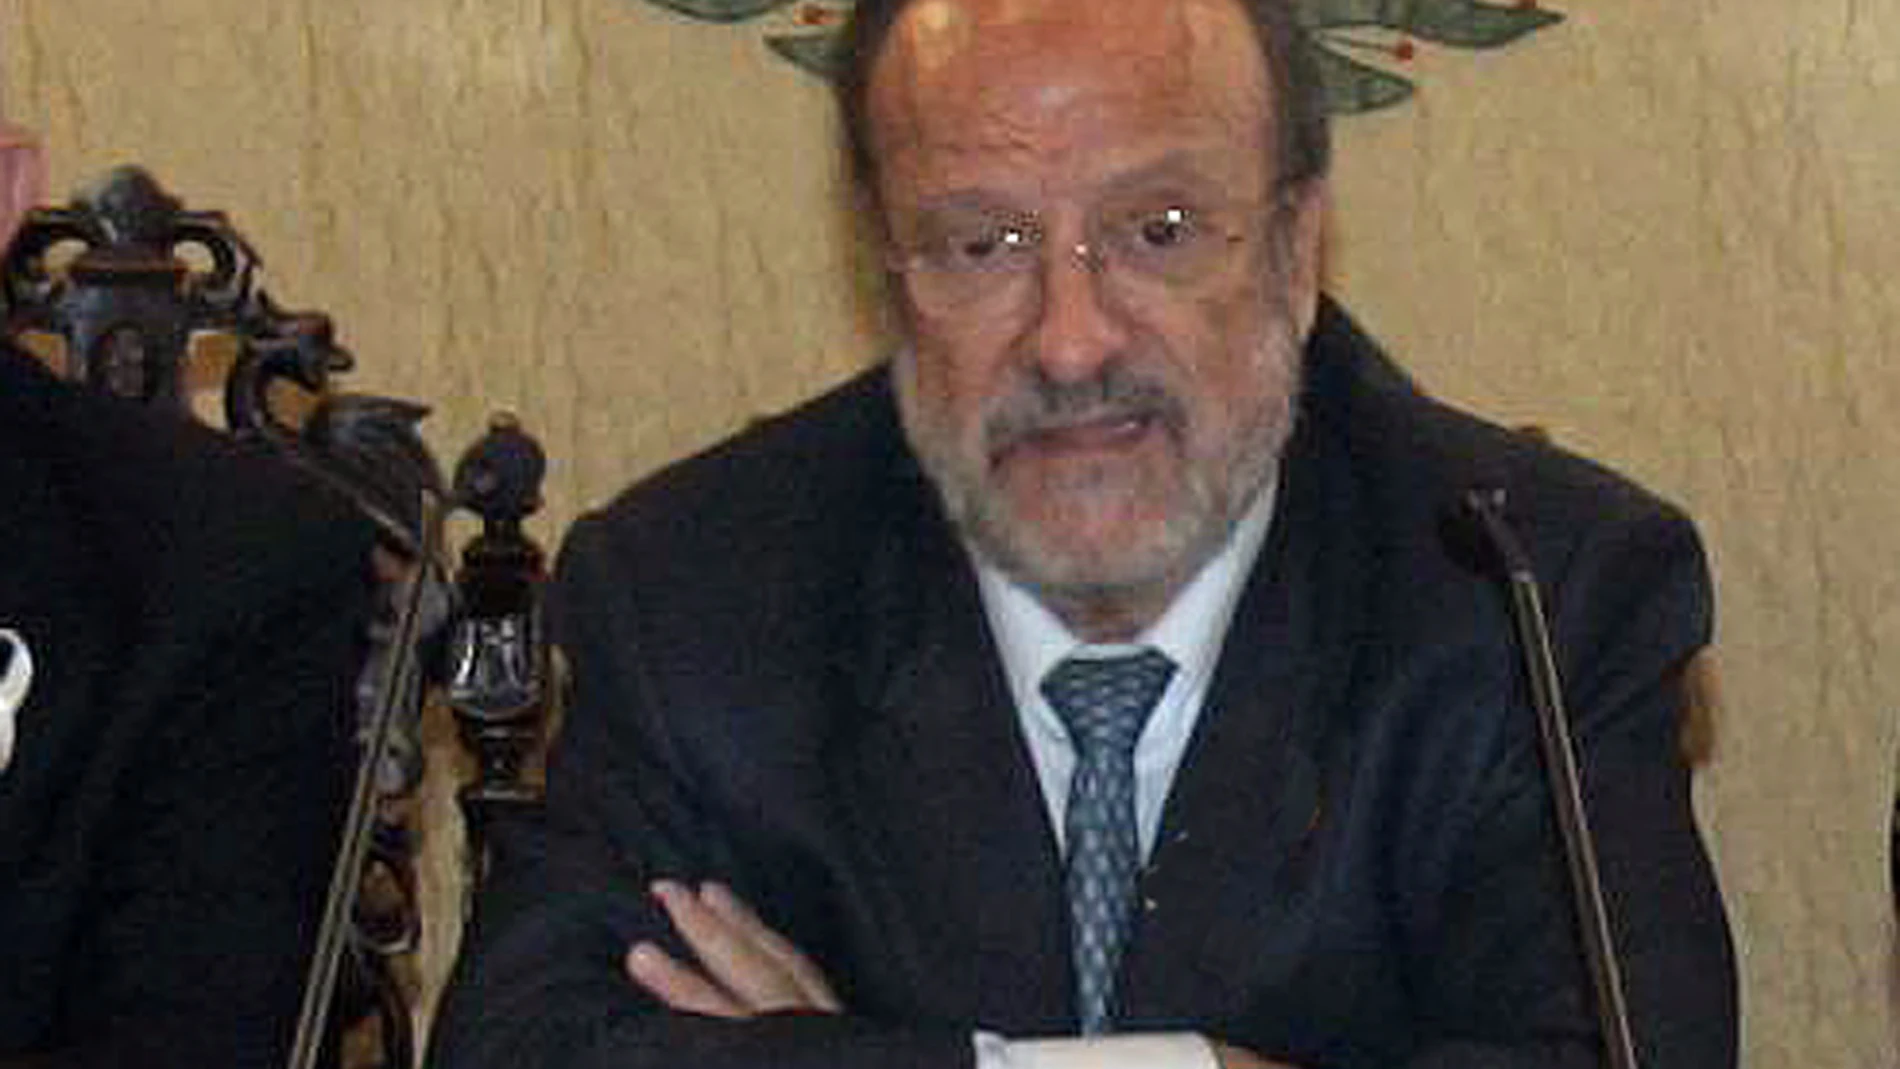 El Alcalde de Valladolid, Javier León de la Riva